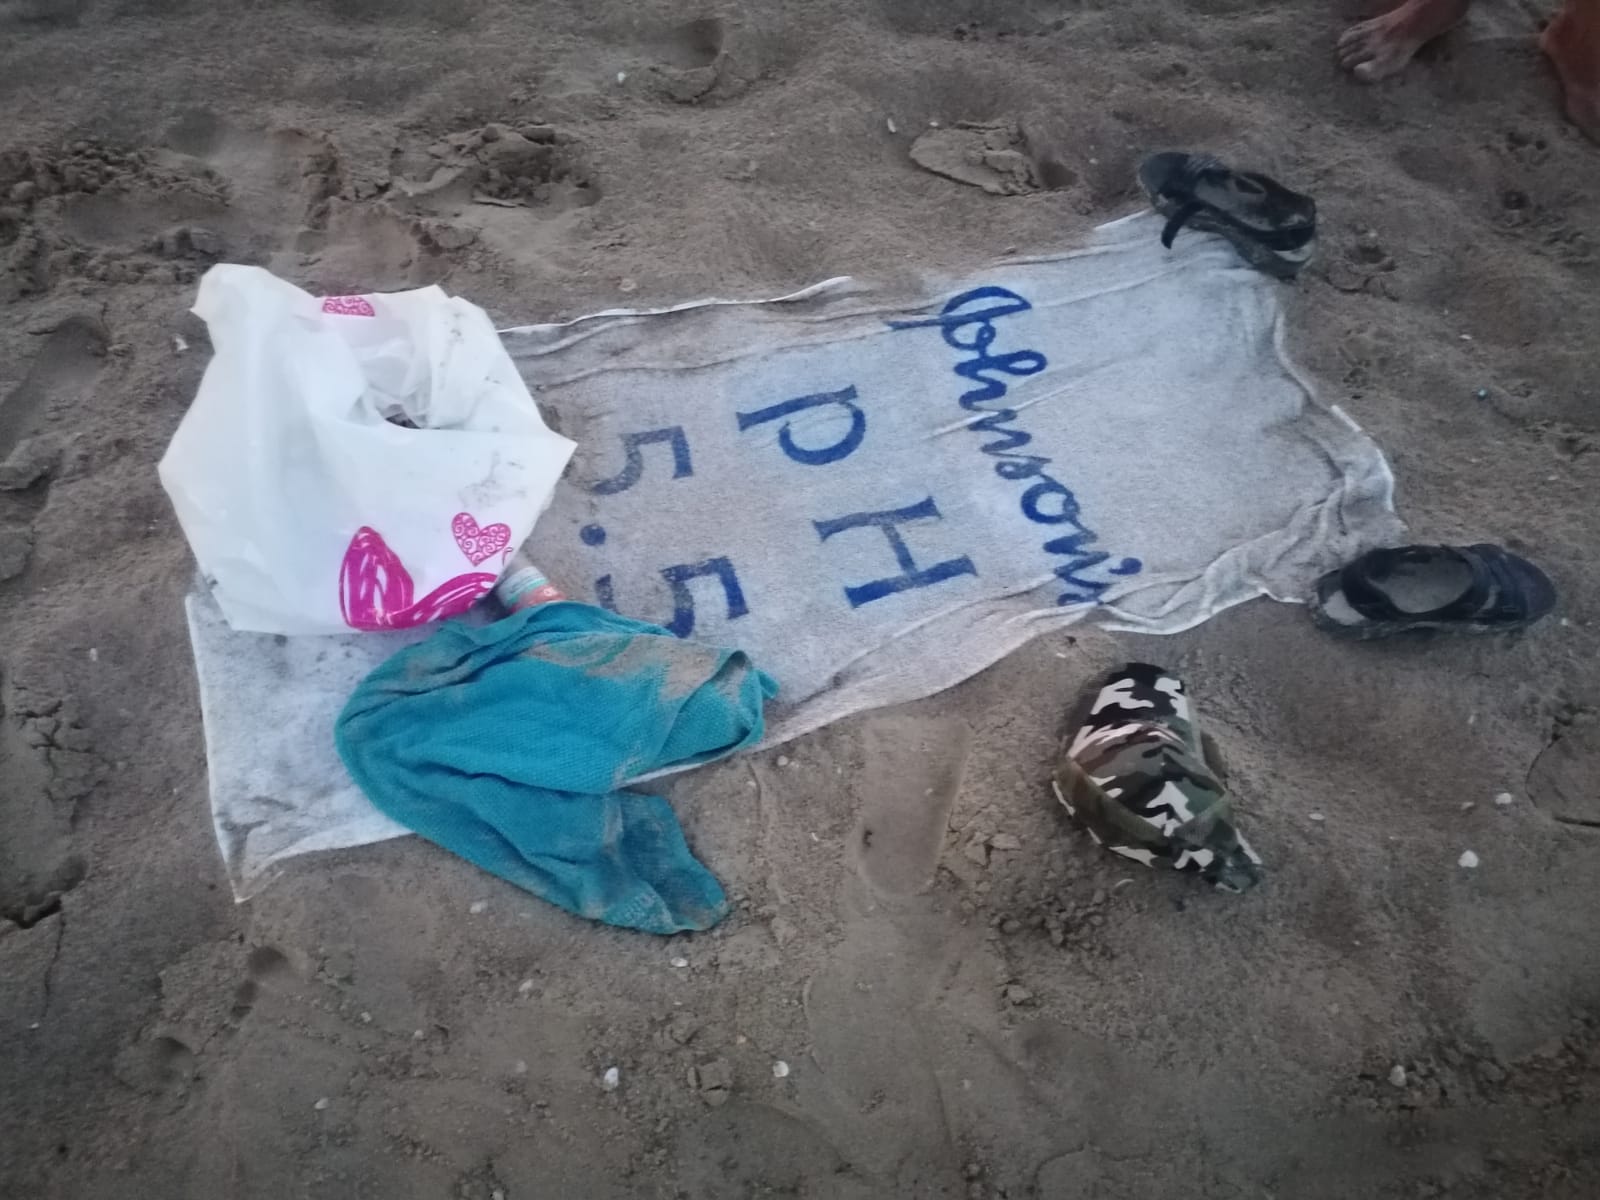 Francavilla al Mare, effetti personali abbandonati in spiaggia: si teme la scomparsa di una persona